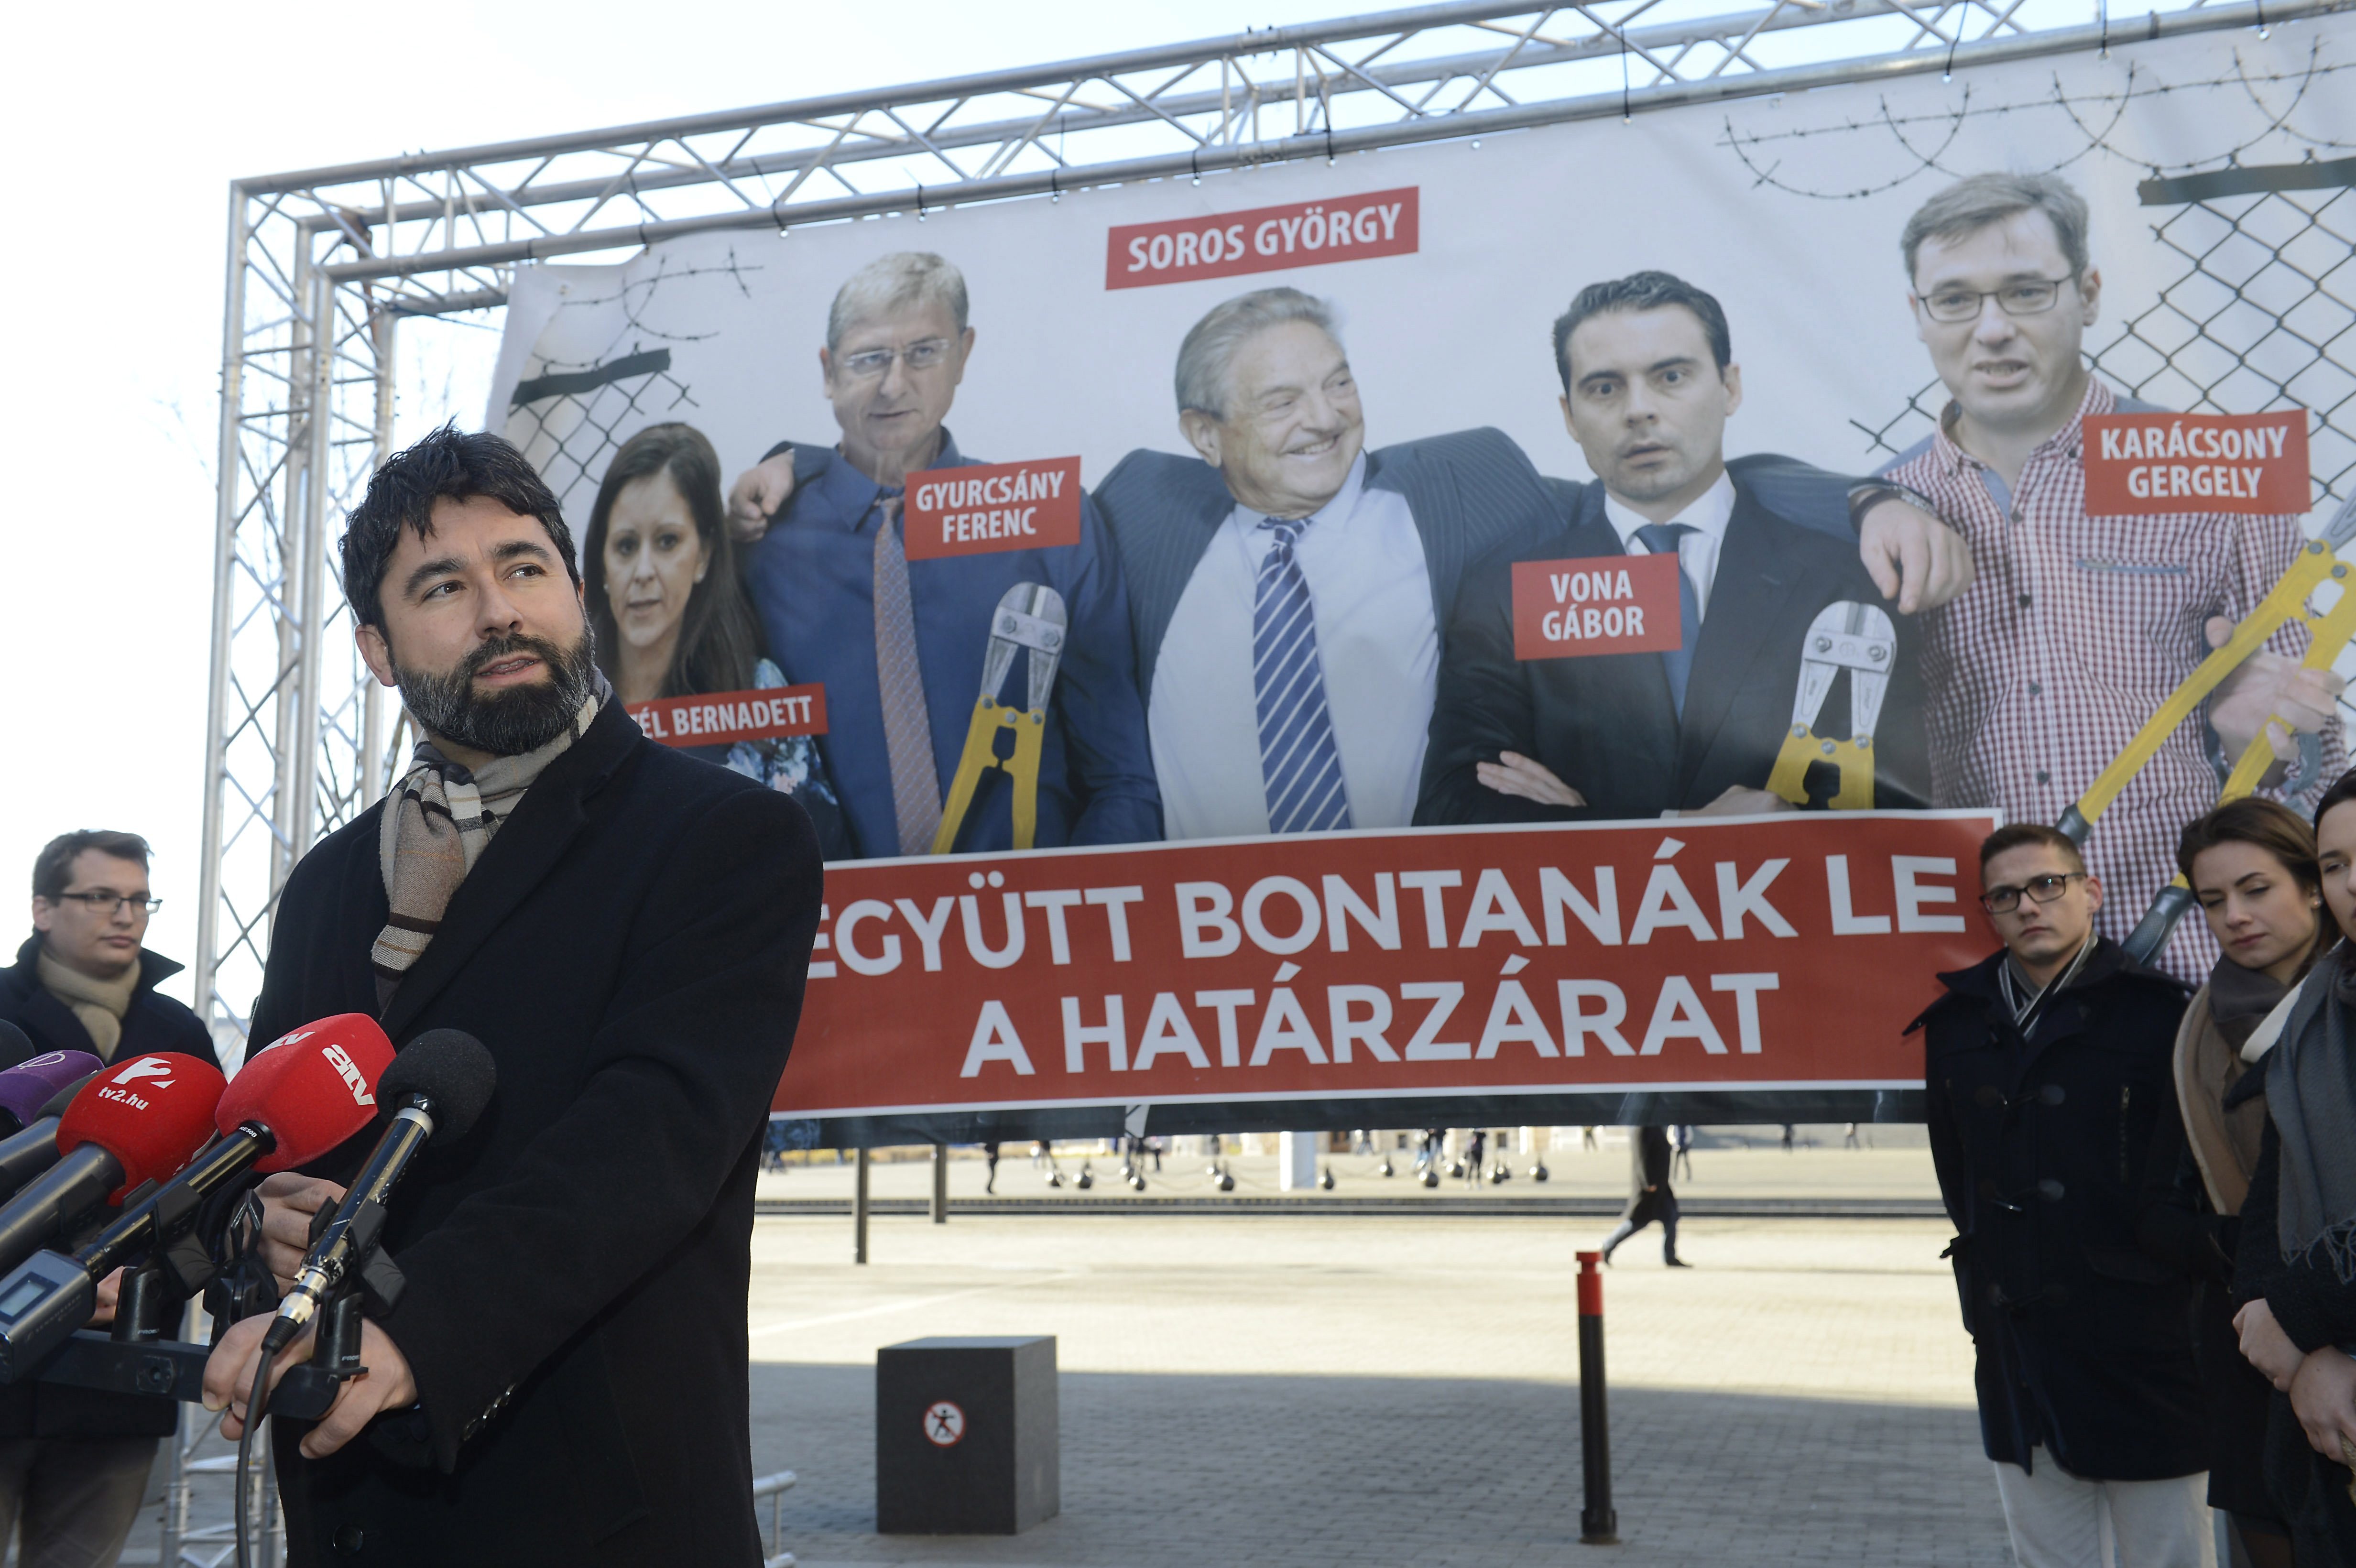 A Fidesz gondosan dokumentálta, hogy megsérti a saját maga által hozott plakáttörvényt